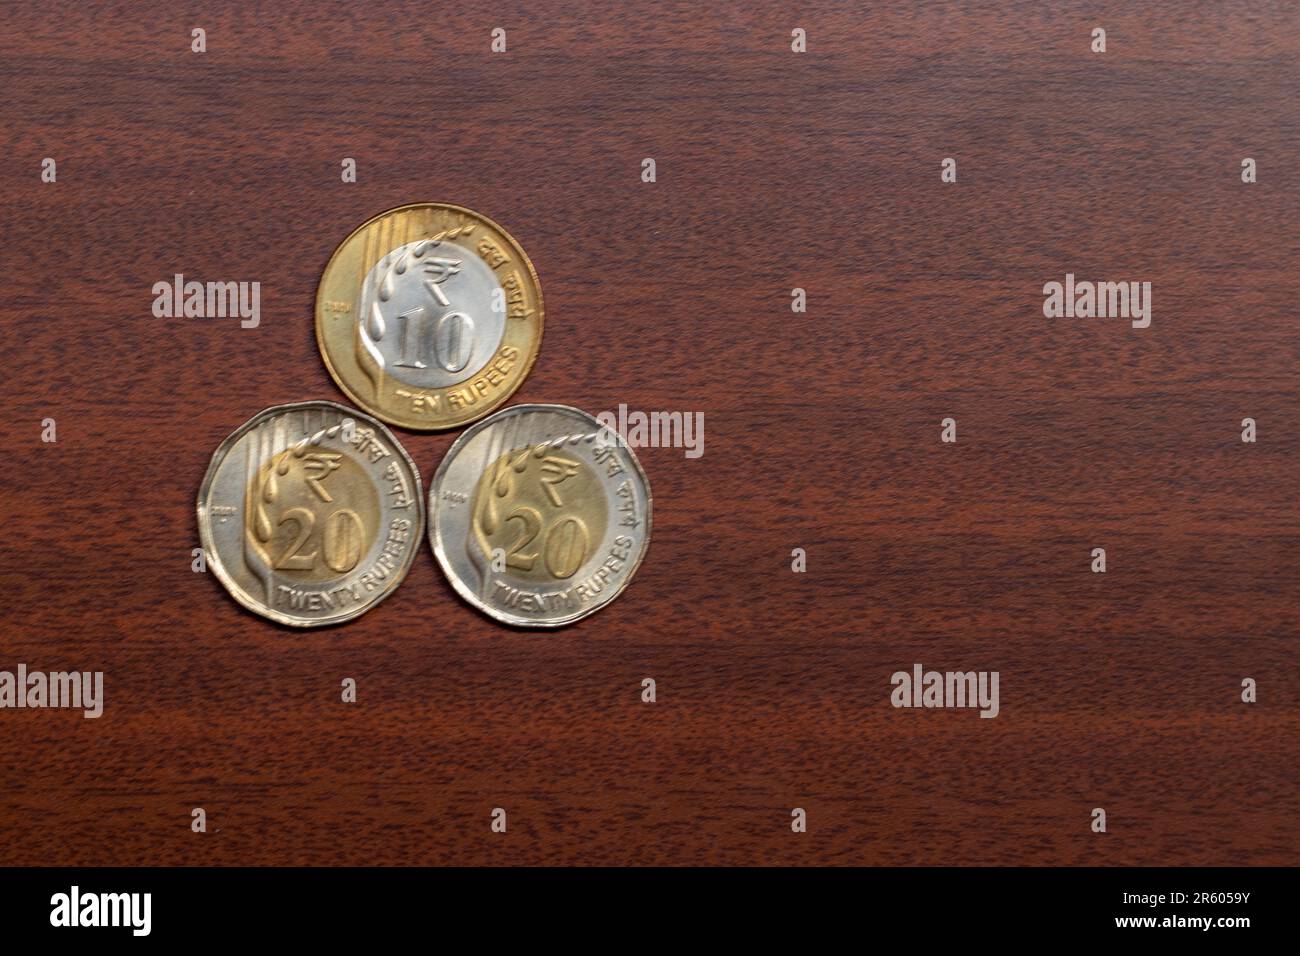 50 roupies de pièces en monnaie indienne Banque D'Images